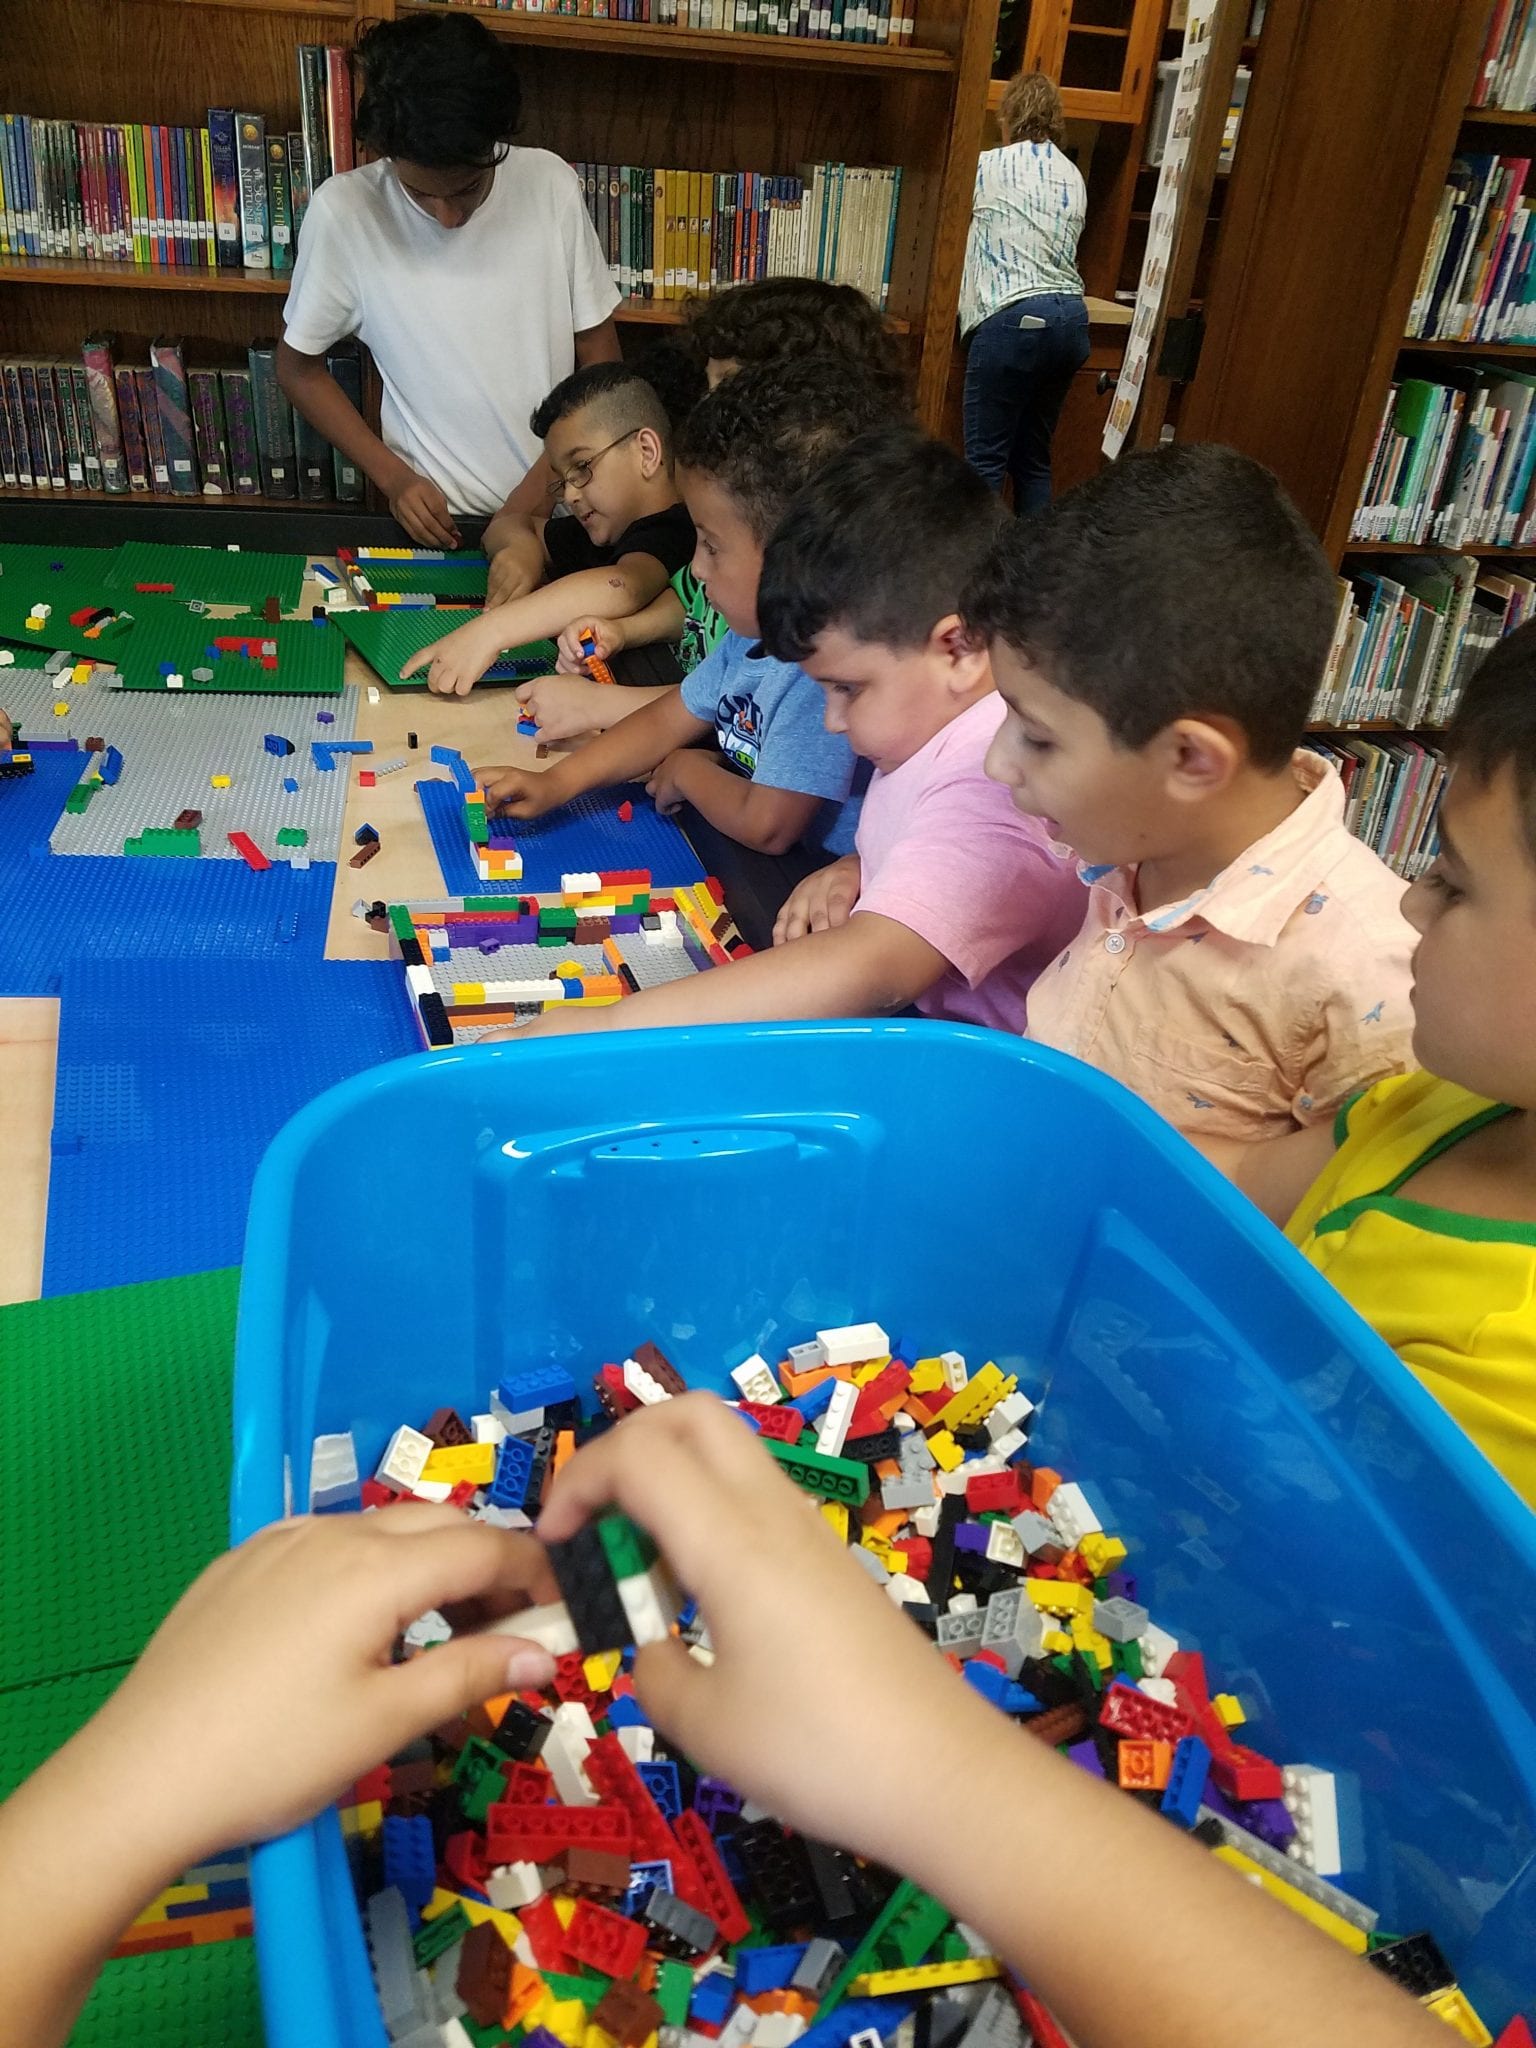 Students enjoying the Lego table